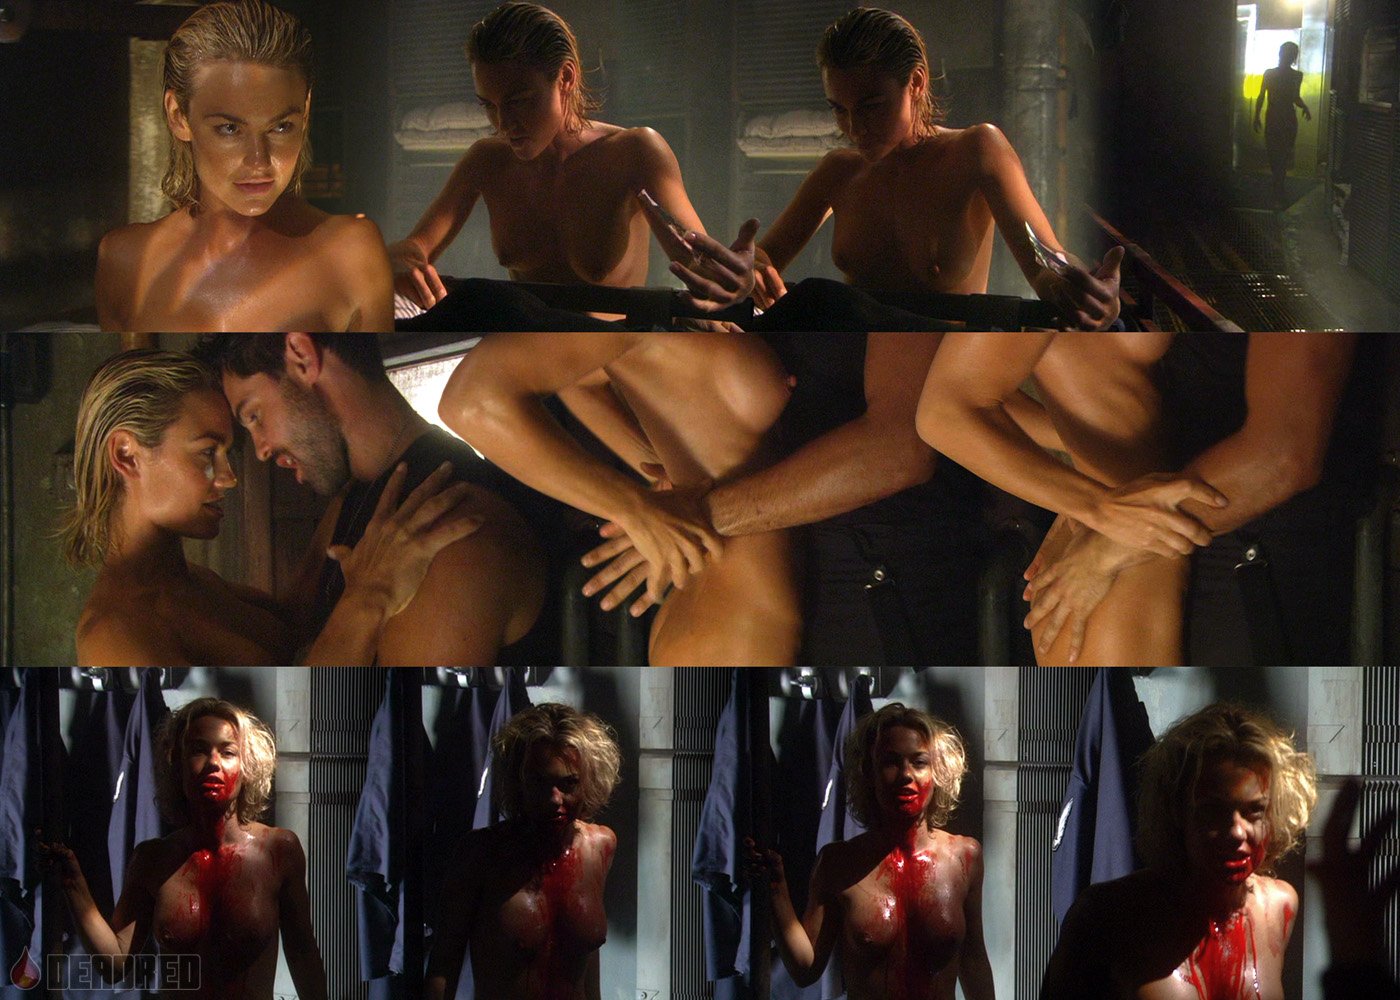 Келли Карлсон nude pics.